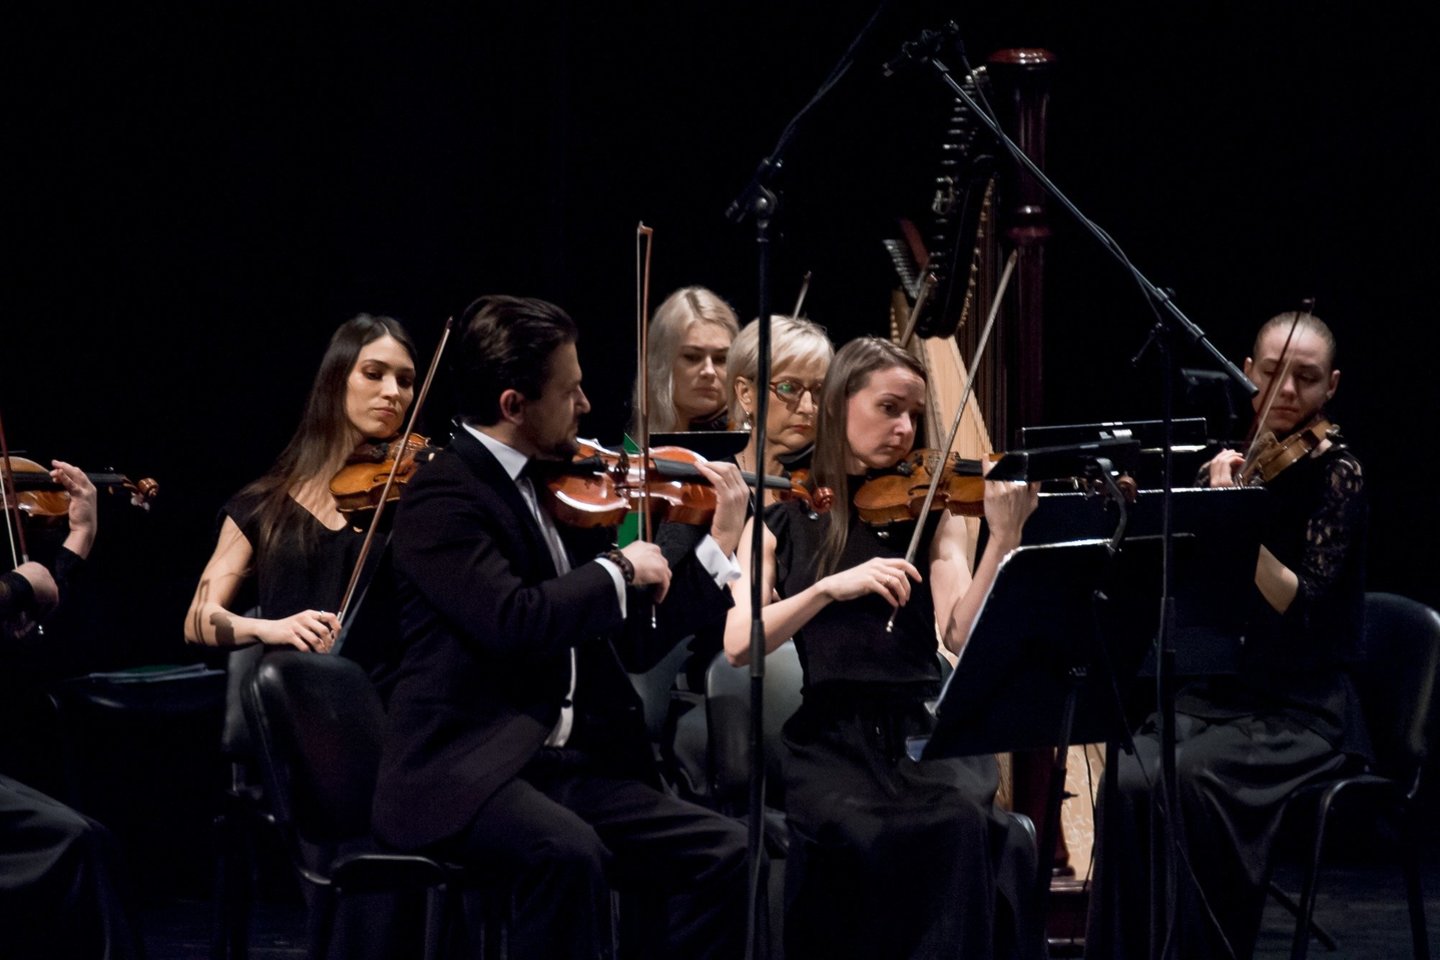  Klaipėdos valstybinio muzikinio teatro simfoninio orkestro styginių instrumentų grupė. <br> O.Kasabovos nuotr.